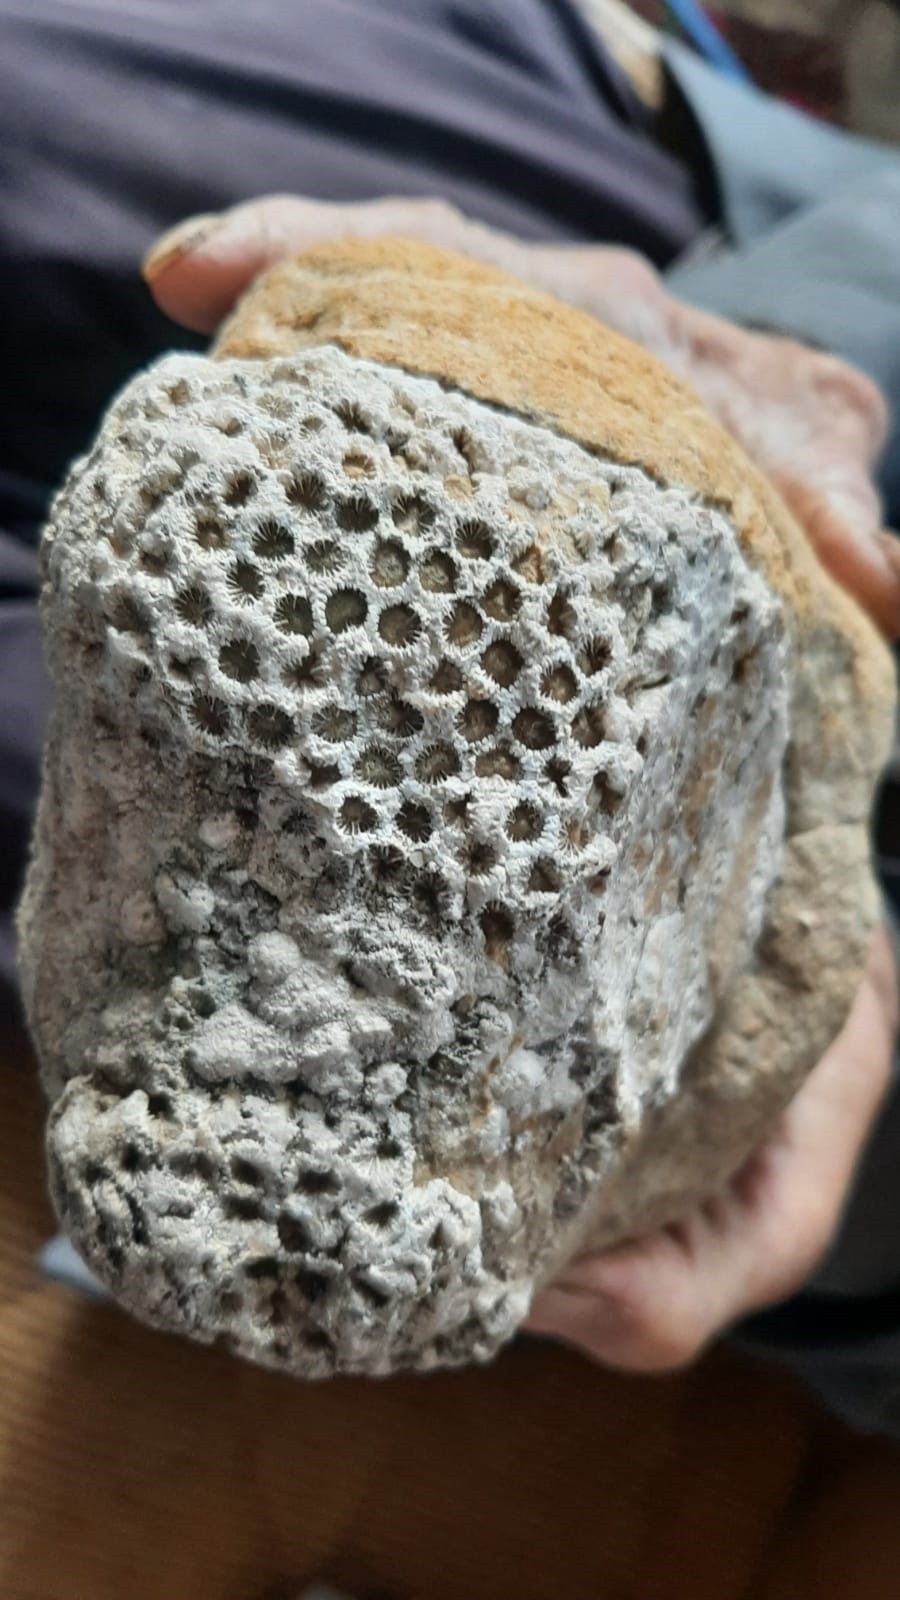 Osmaniye'nin Kadirli ilçesinde bir vatandaş dağda gezdiği sırada arı peteği fosili buldu.
